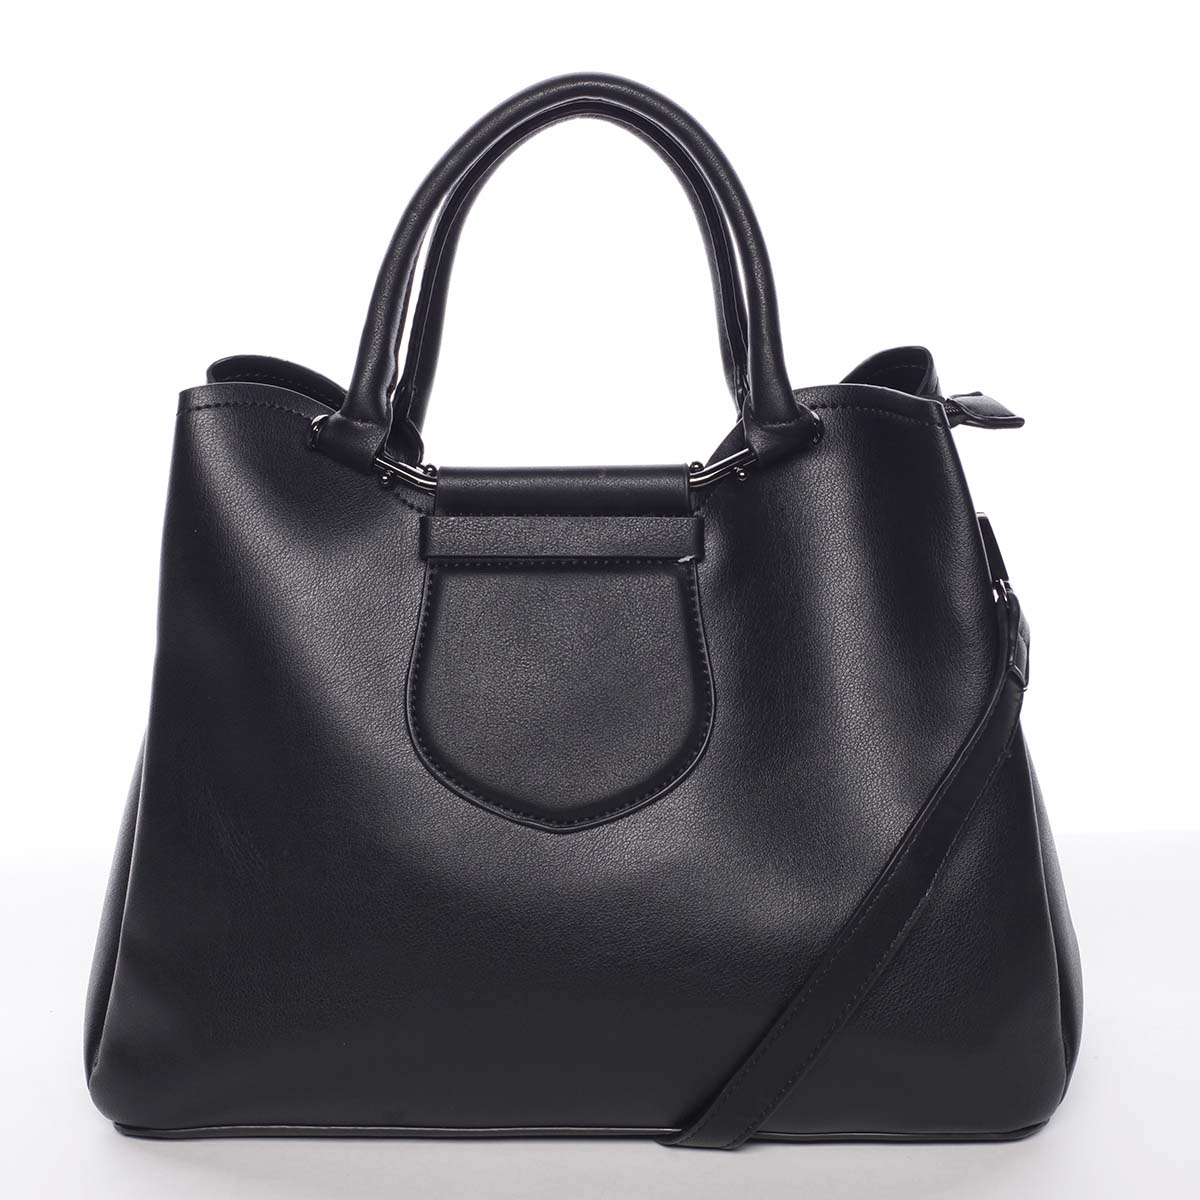 Originálna a elegantná dámska čierna kabelka do ruky - MARIA C Terisita